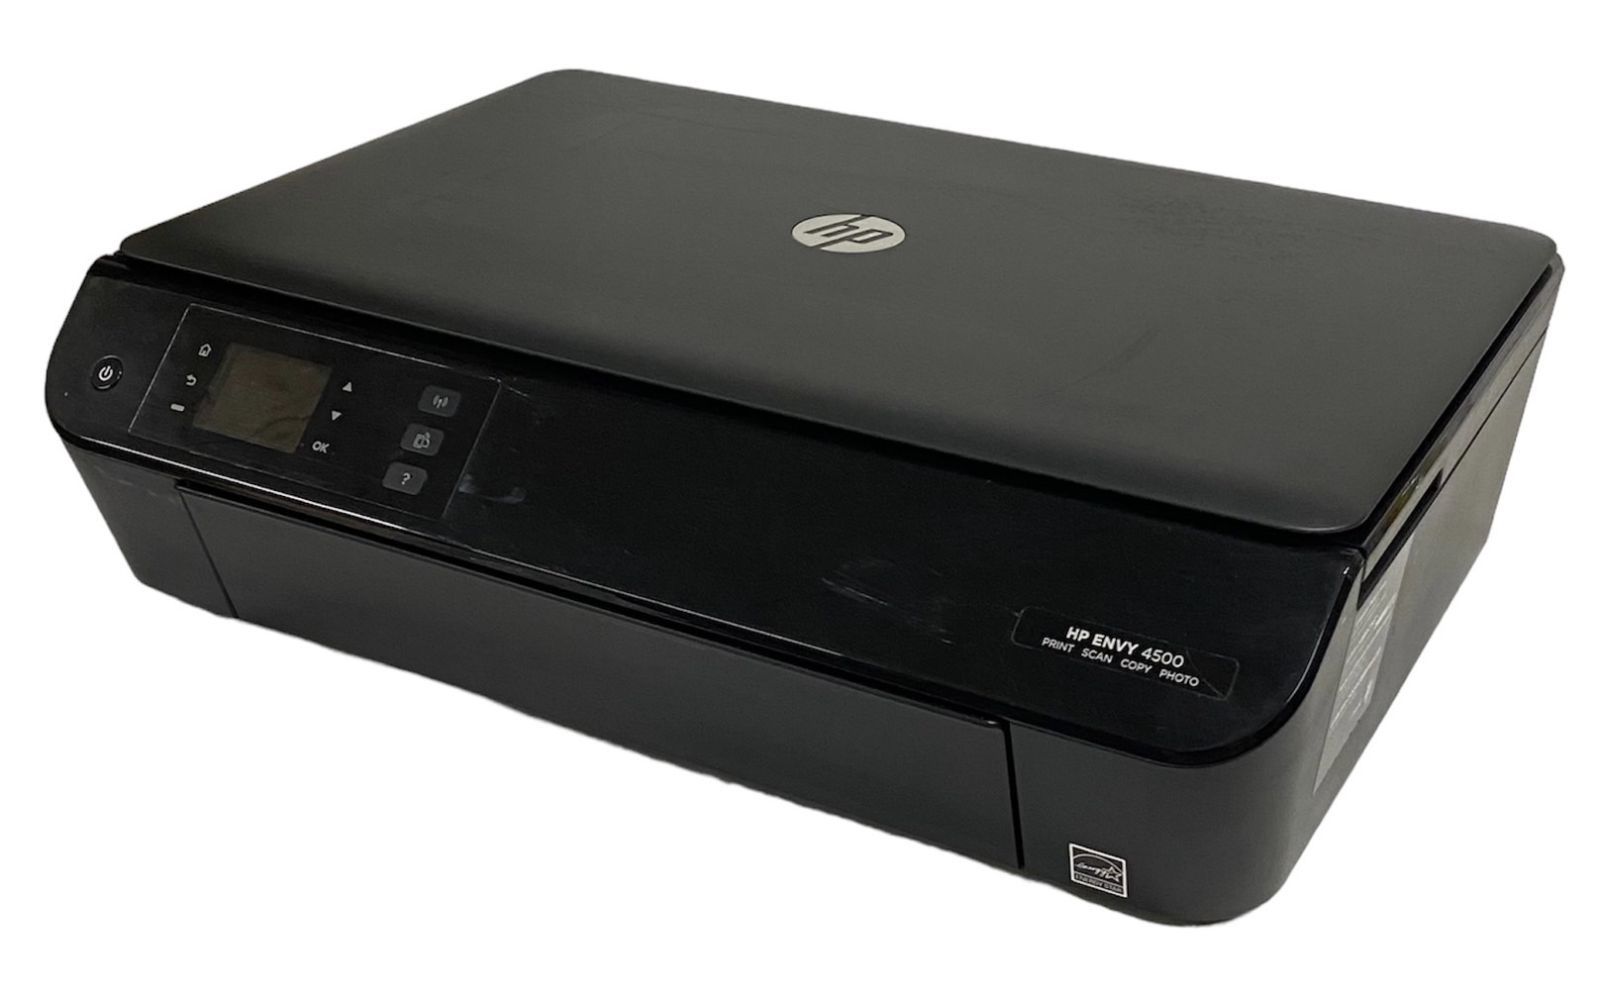 中古）HP ENVY4500 A4カラー複合機 (ワイヤレス印刷対応・自動両面印刷 ...